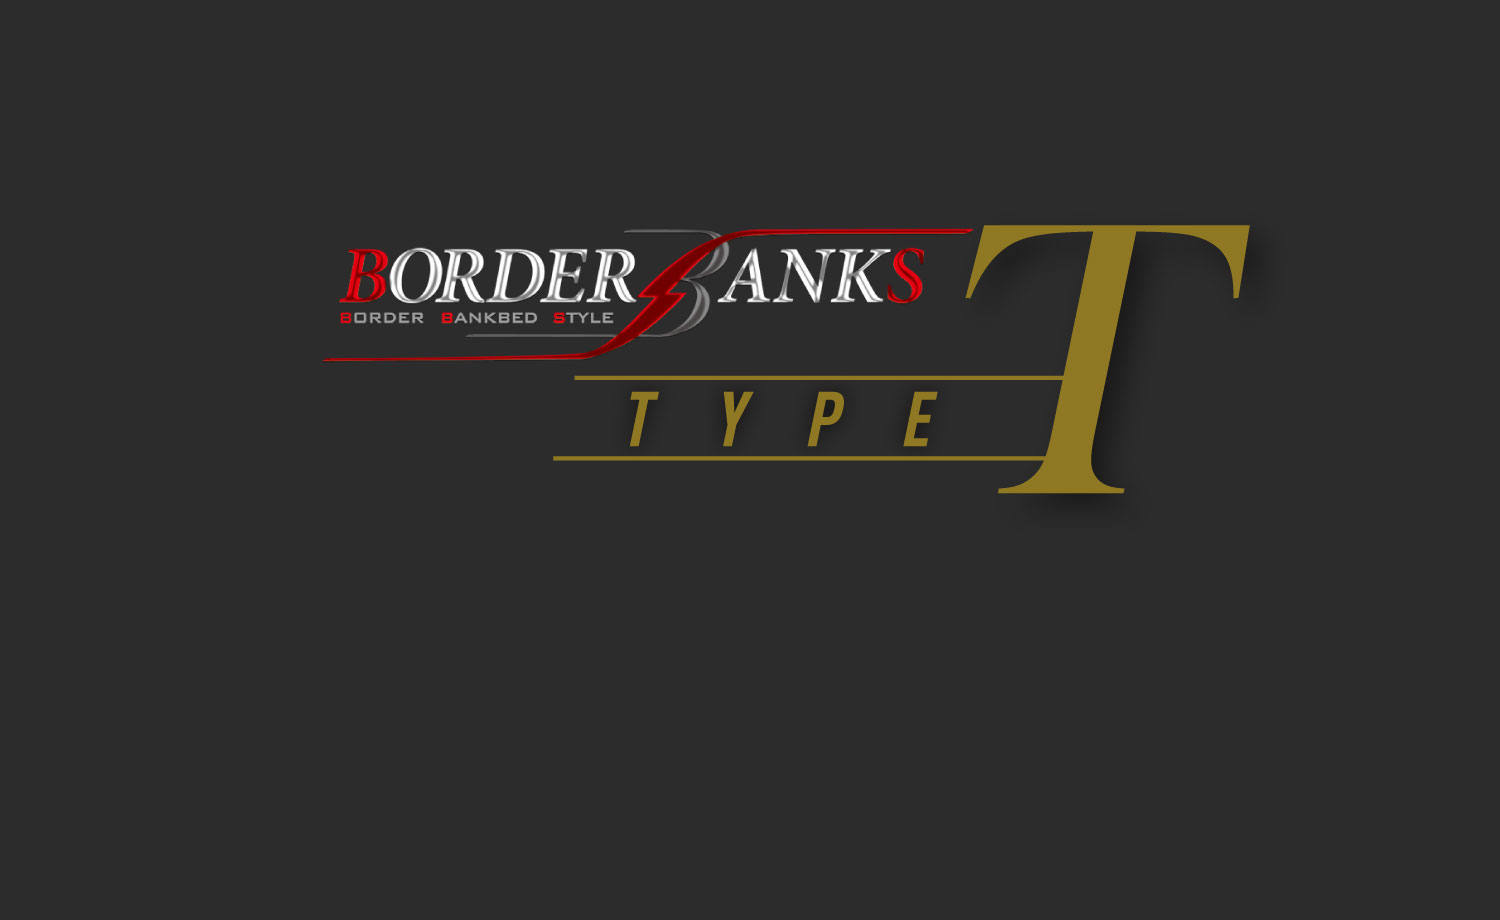 フルコンキャンピングカーボーダーバンクス TYPE Tのスマホ用カバー写真